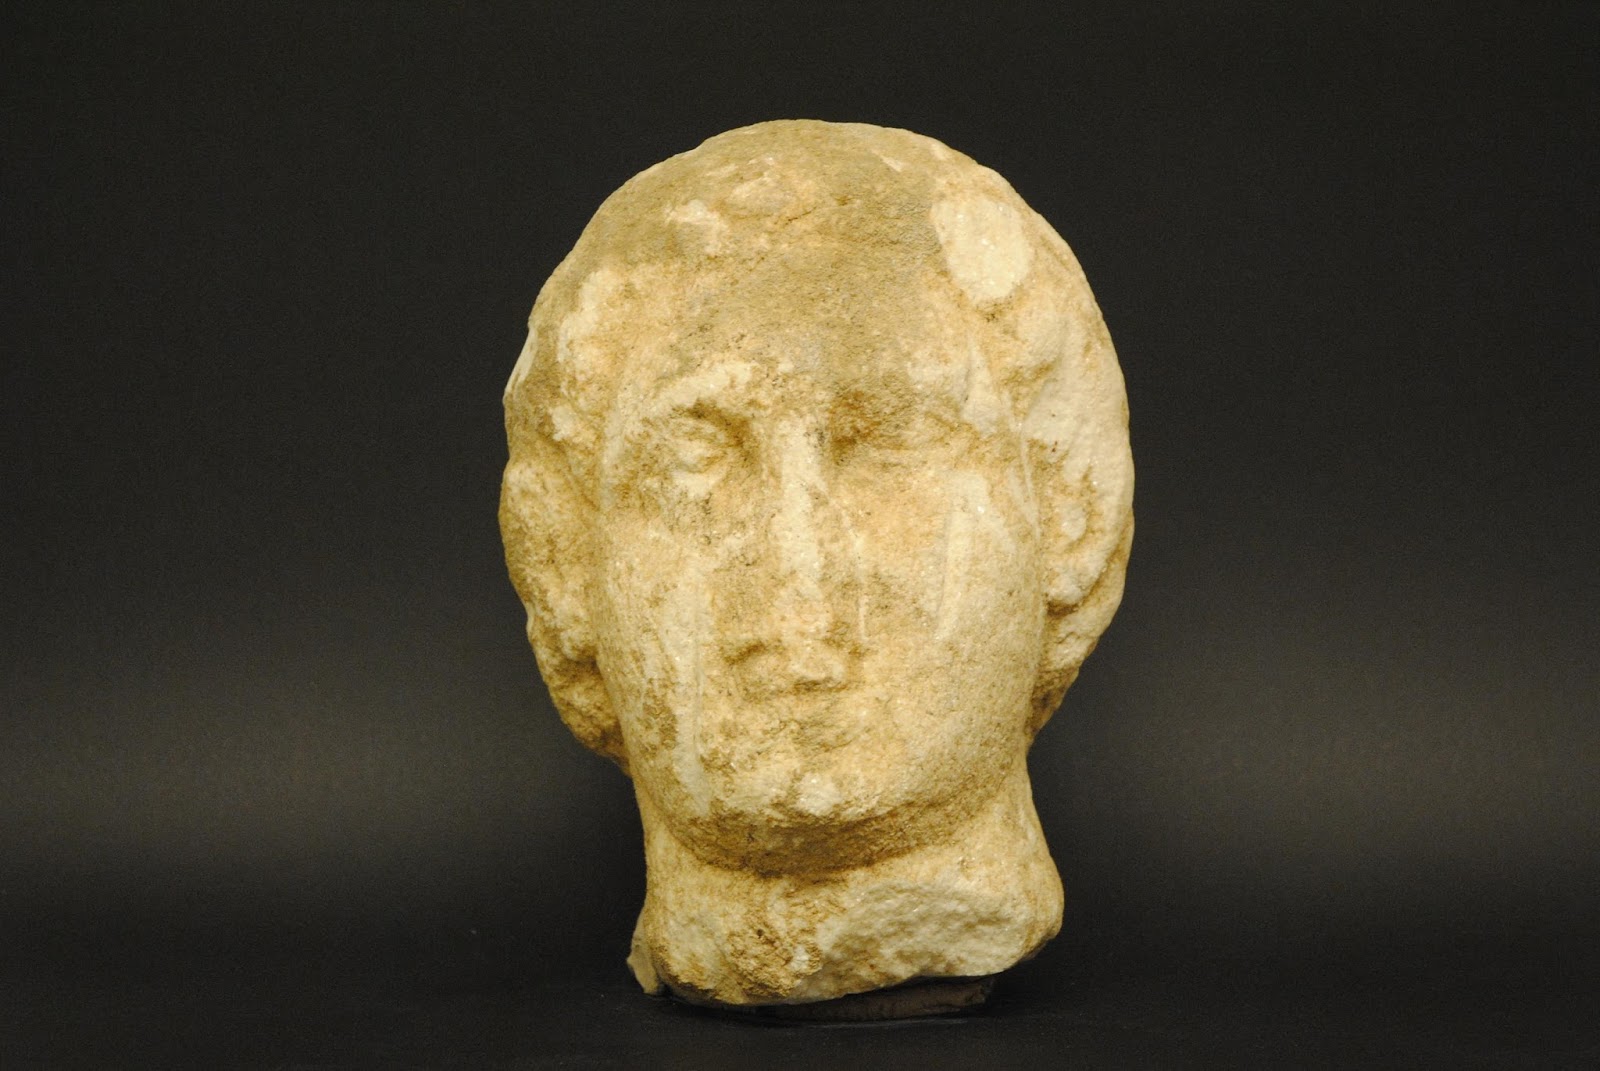 Αποκαλύφθηκε ευρωπαικό κύκλωμα αρχαιοκάπηλων με  25.000 αρχαιοελληνικά και ρωμαϊκά αντικείμενα